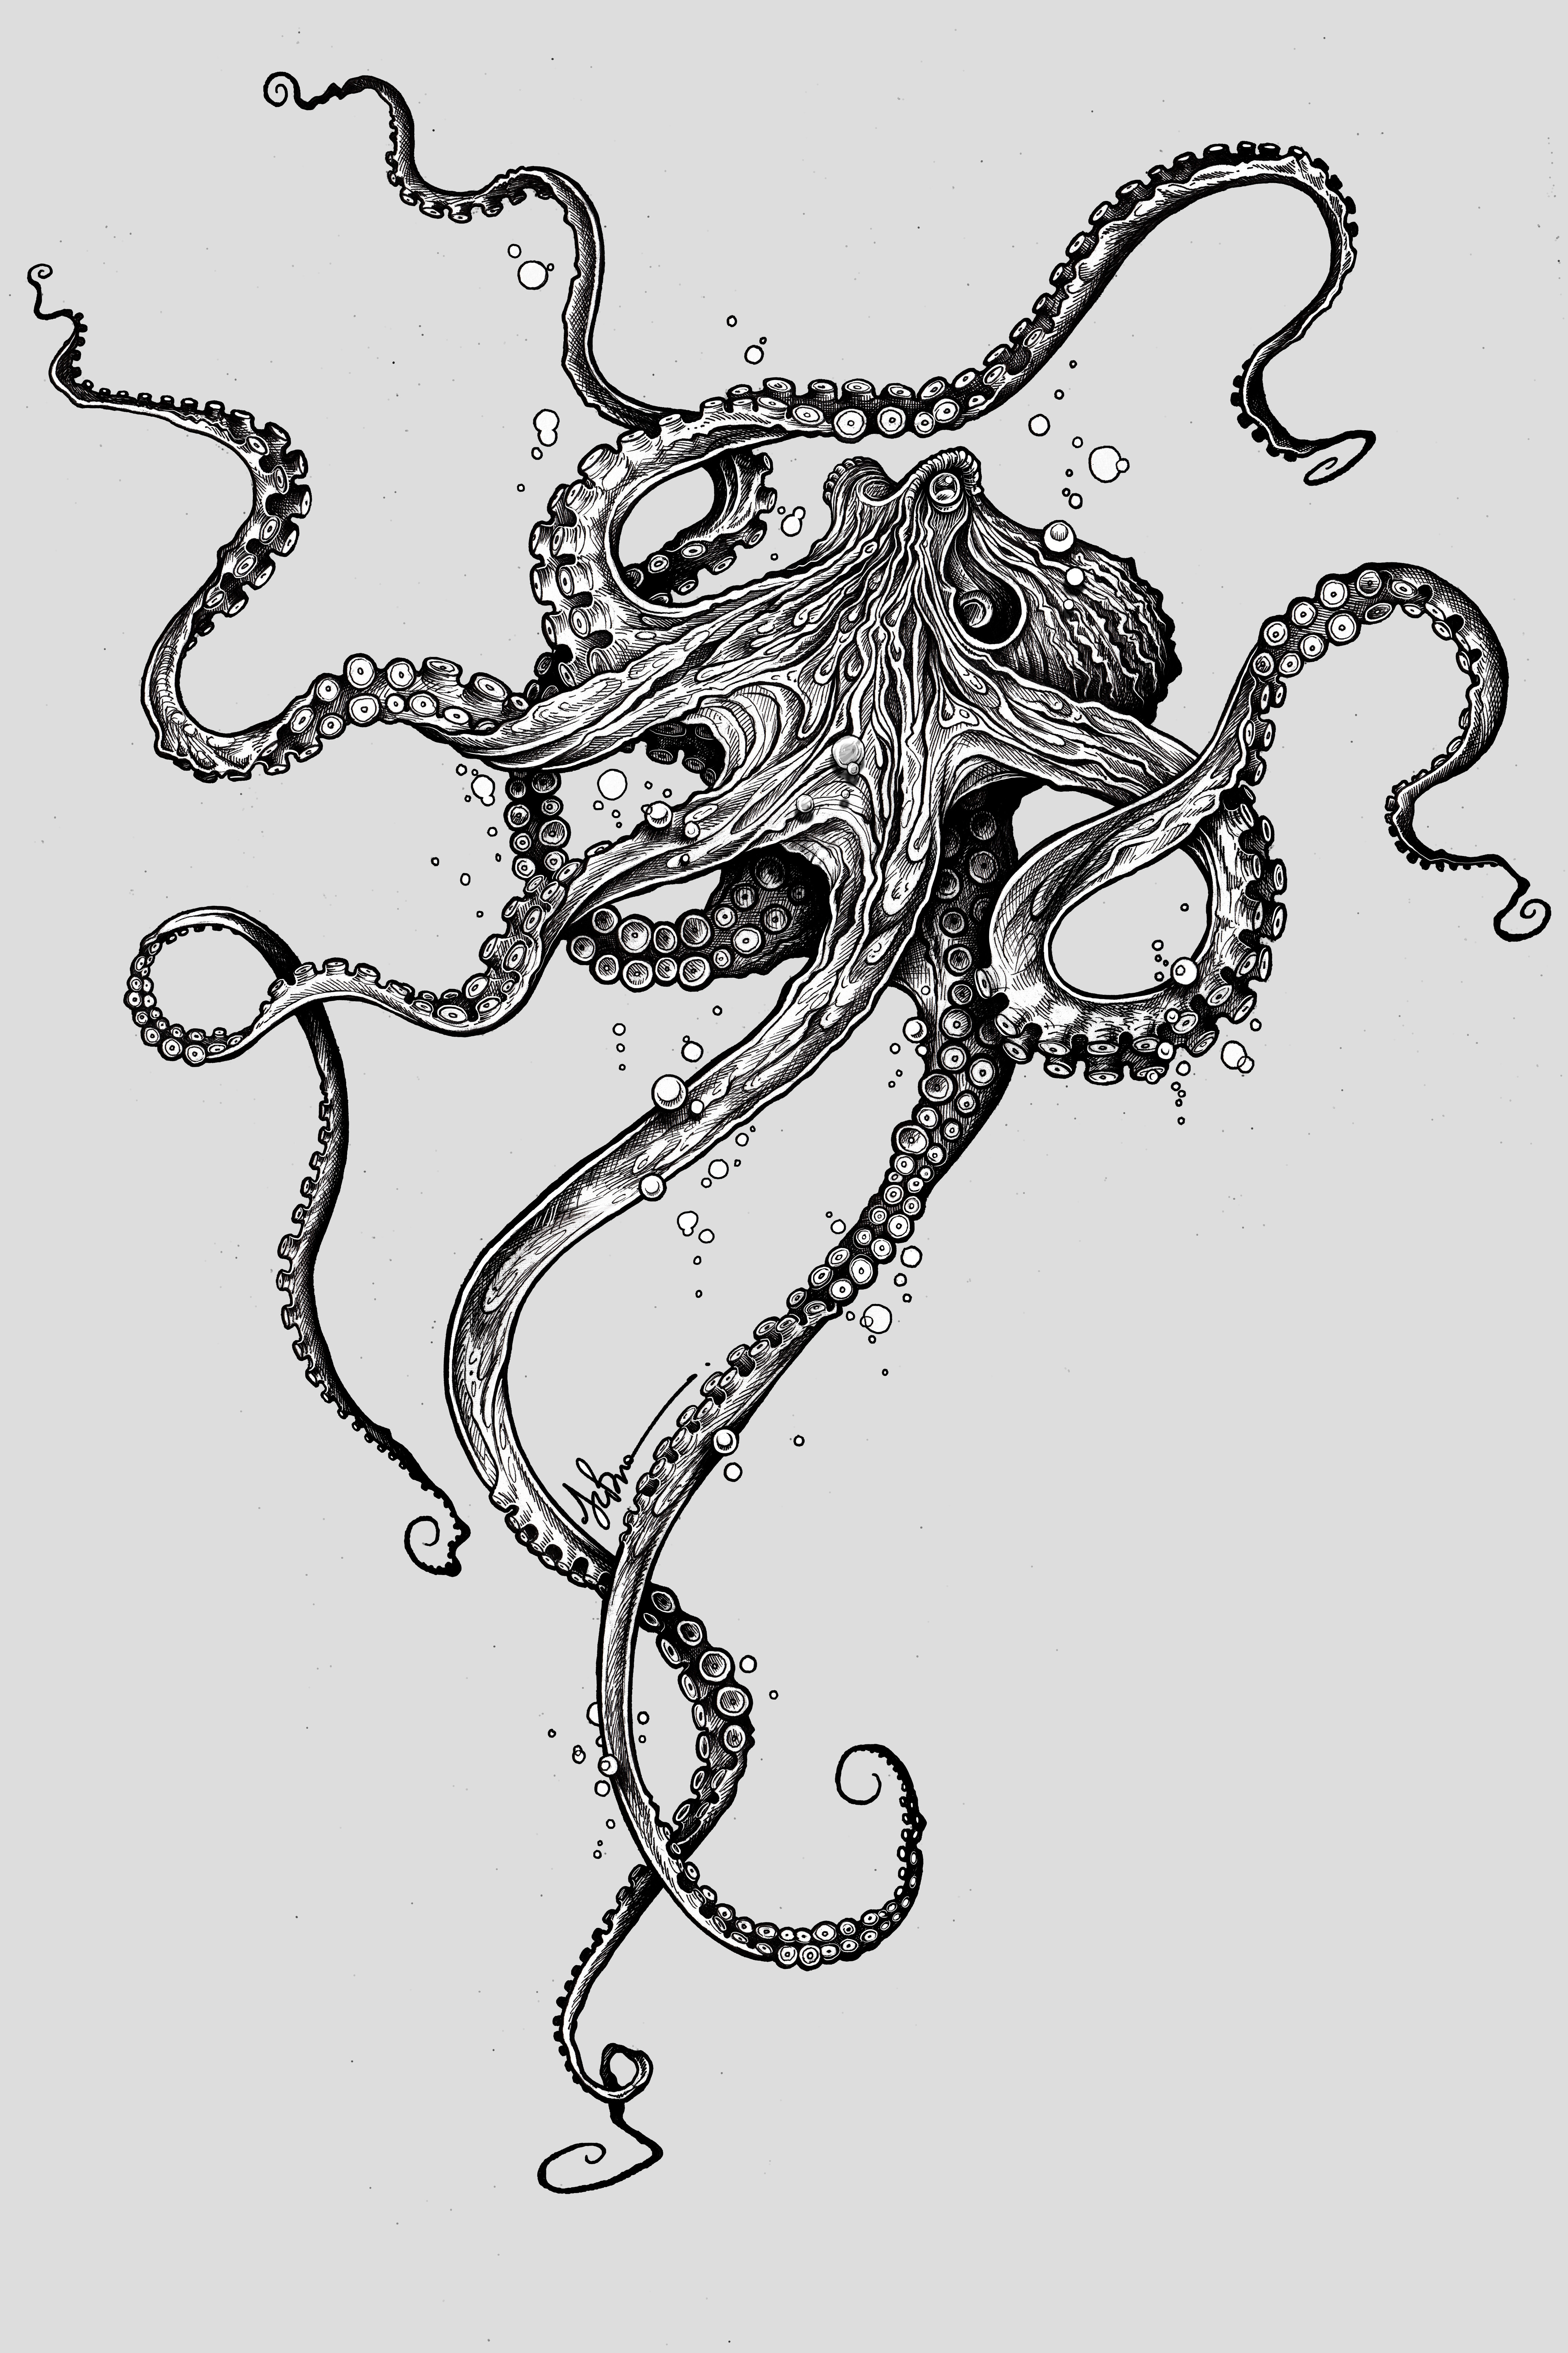 Octopus by TAOJB